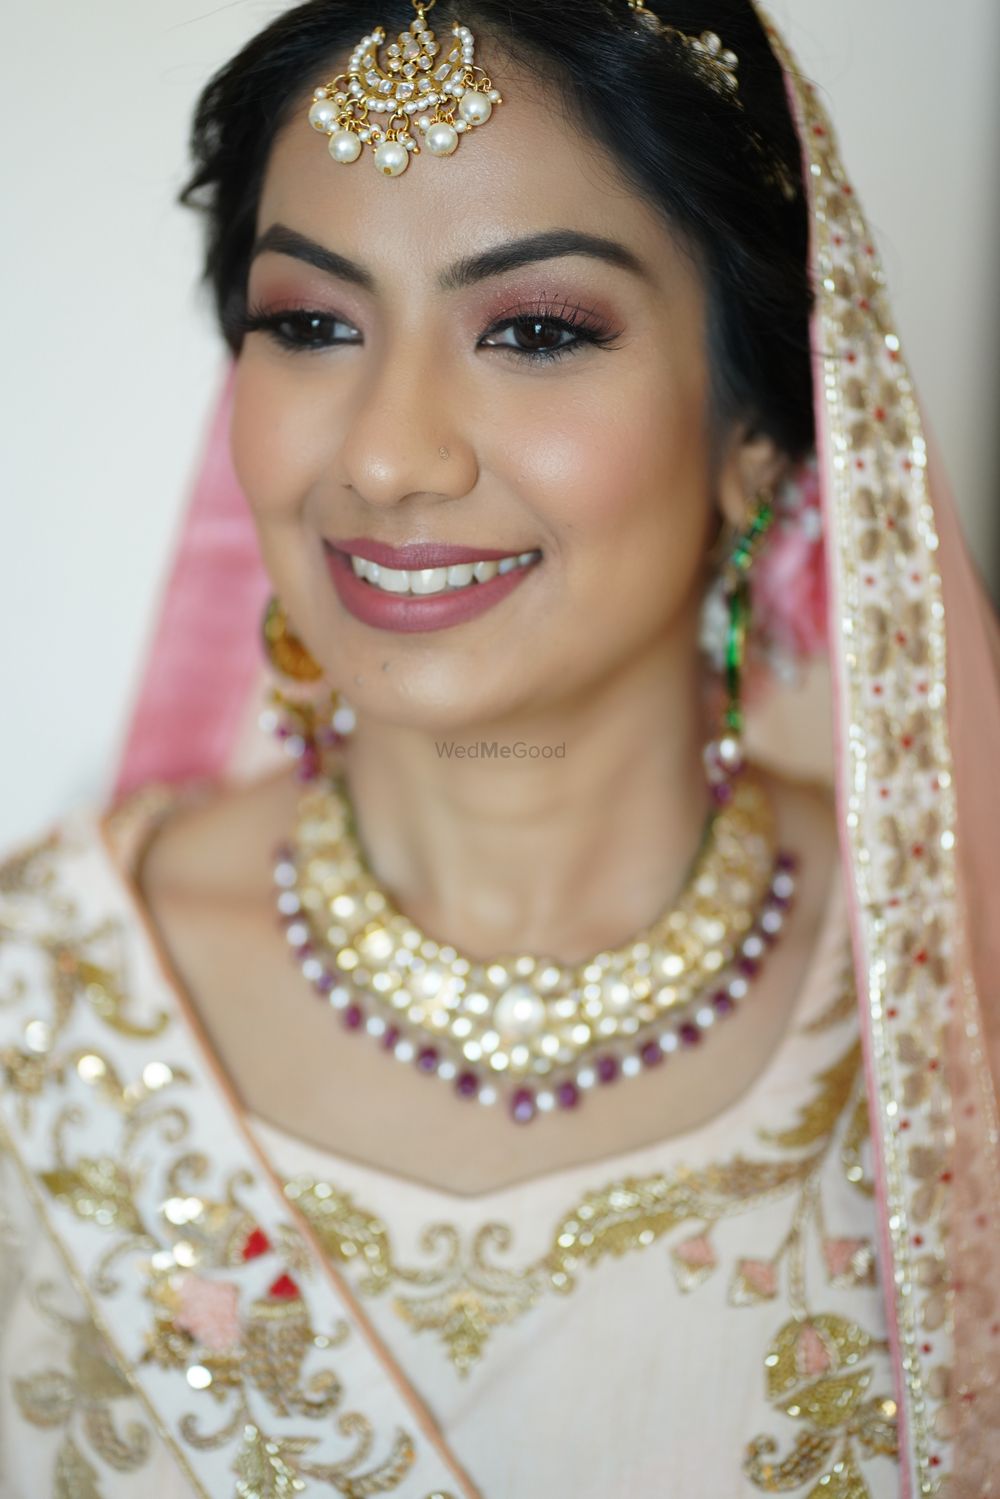 Photo From Brides - By Sahima handa